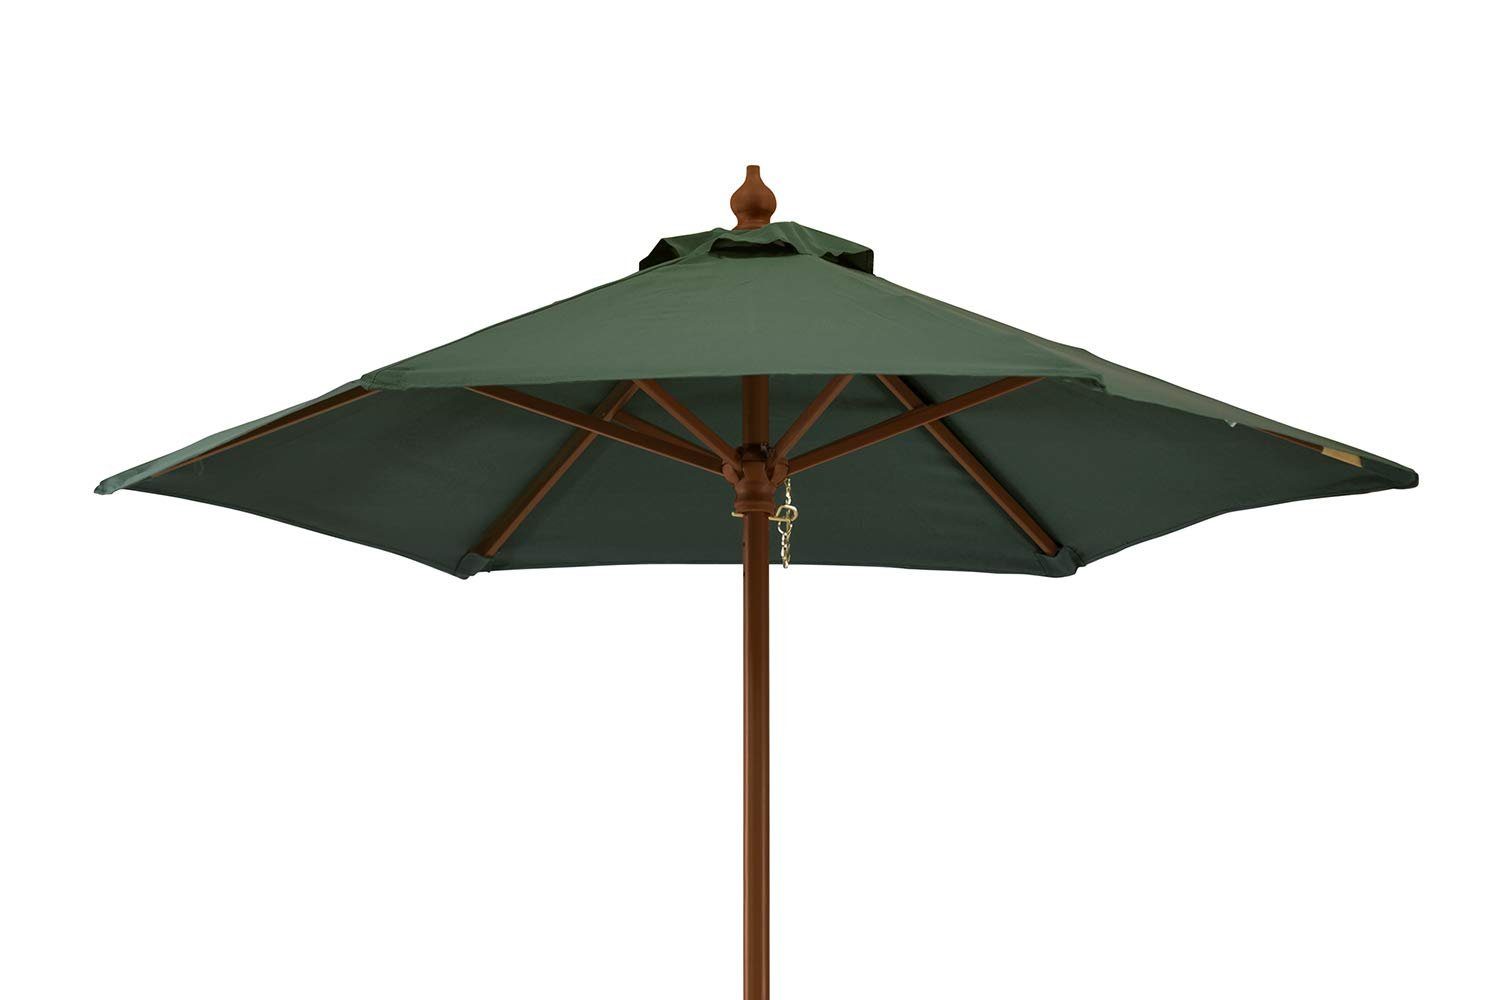 Kai Wiechmann Sonnenschirm Kompakter Balkonschirm 150 cm als hochwertiger Schattenspender, Strandschirm mit Tragetasche, Windauslass & UPF50+